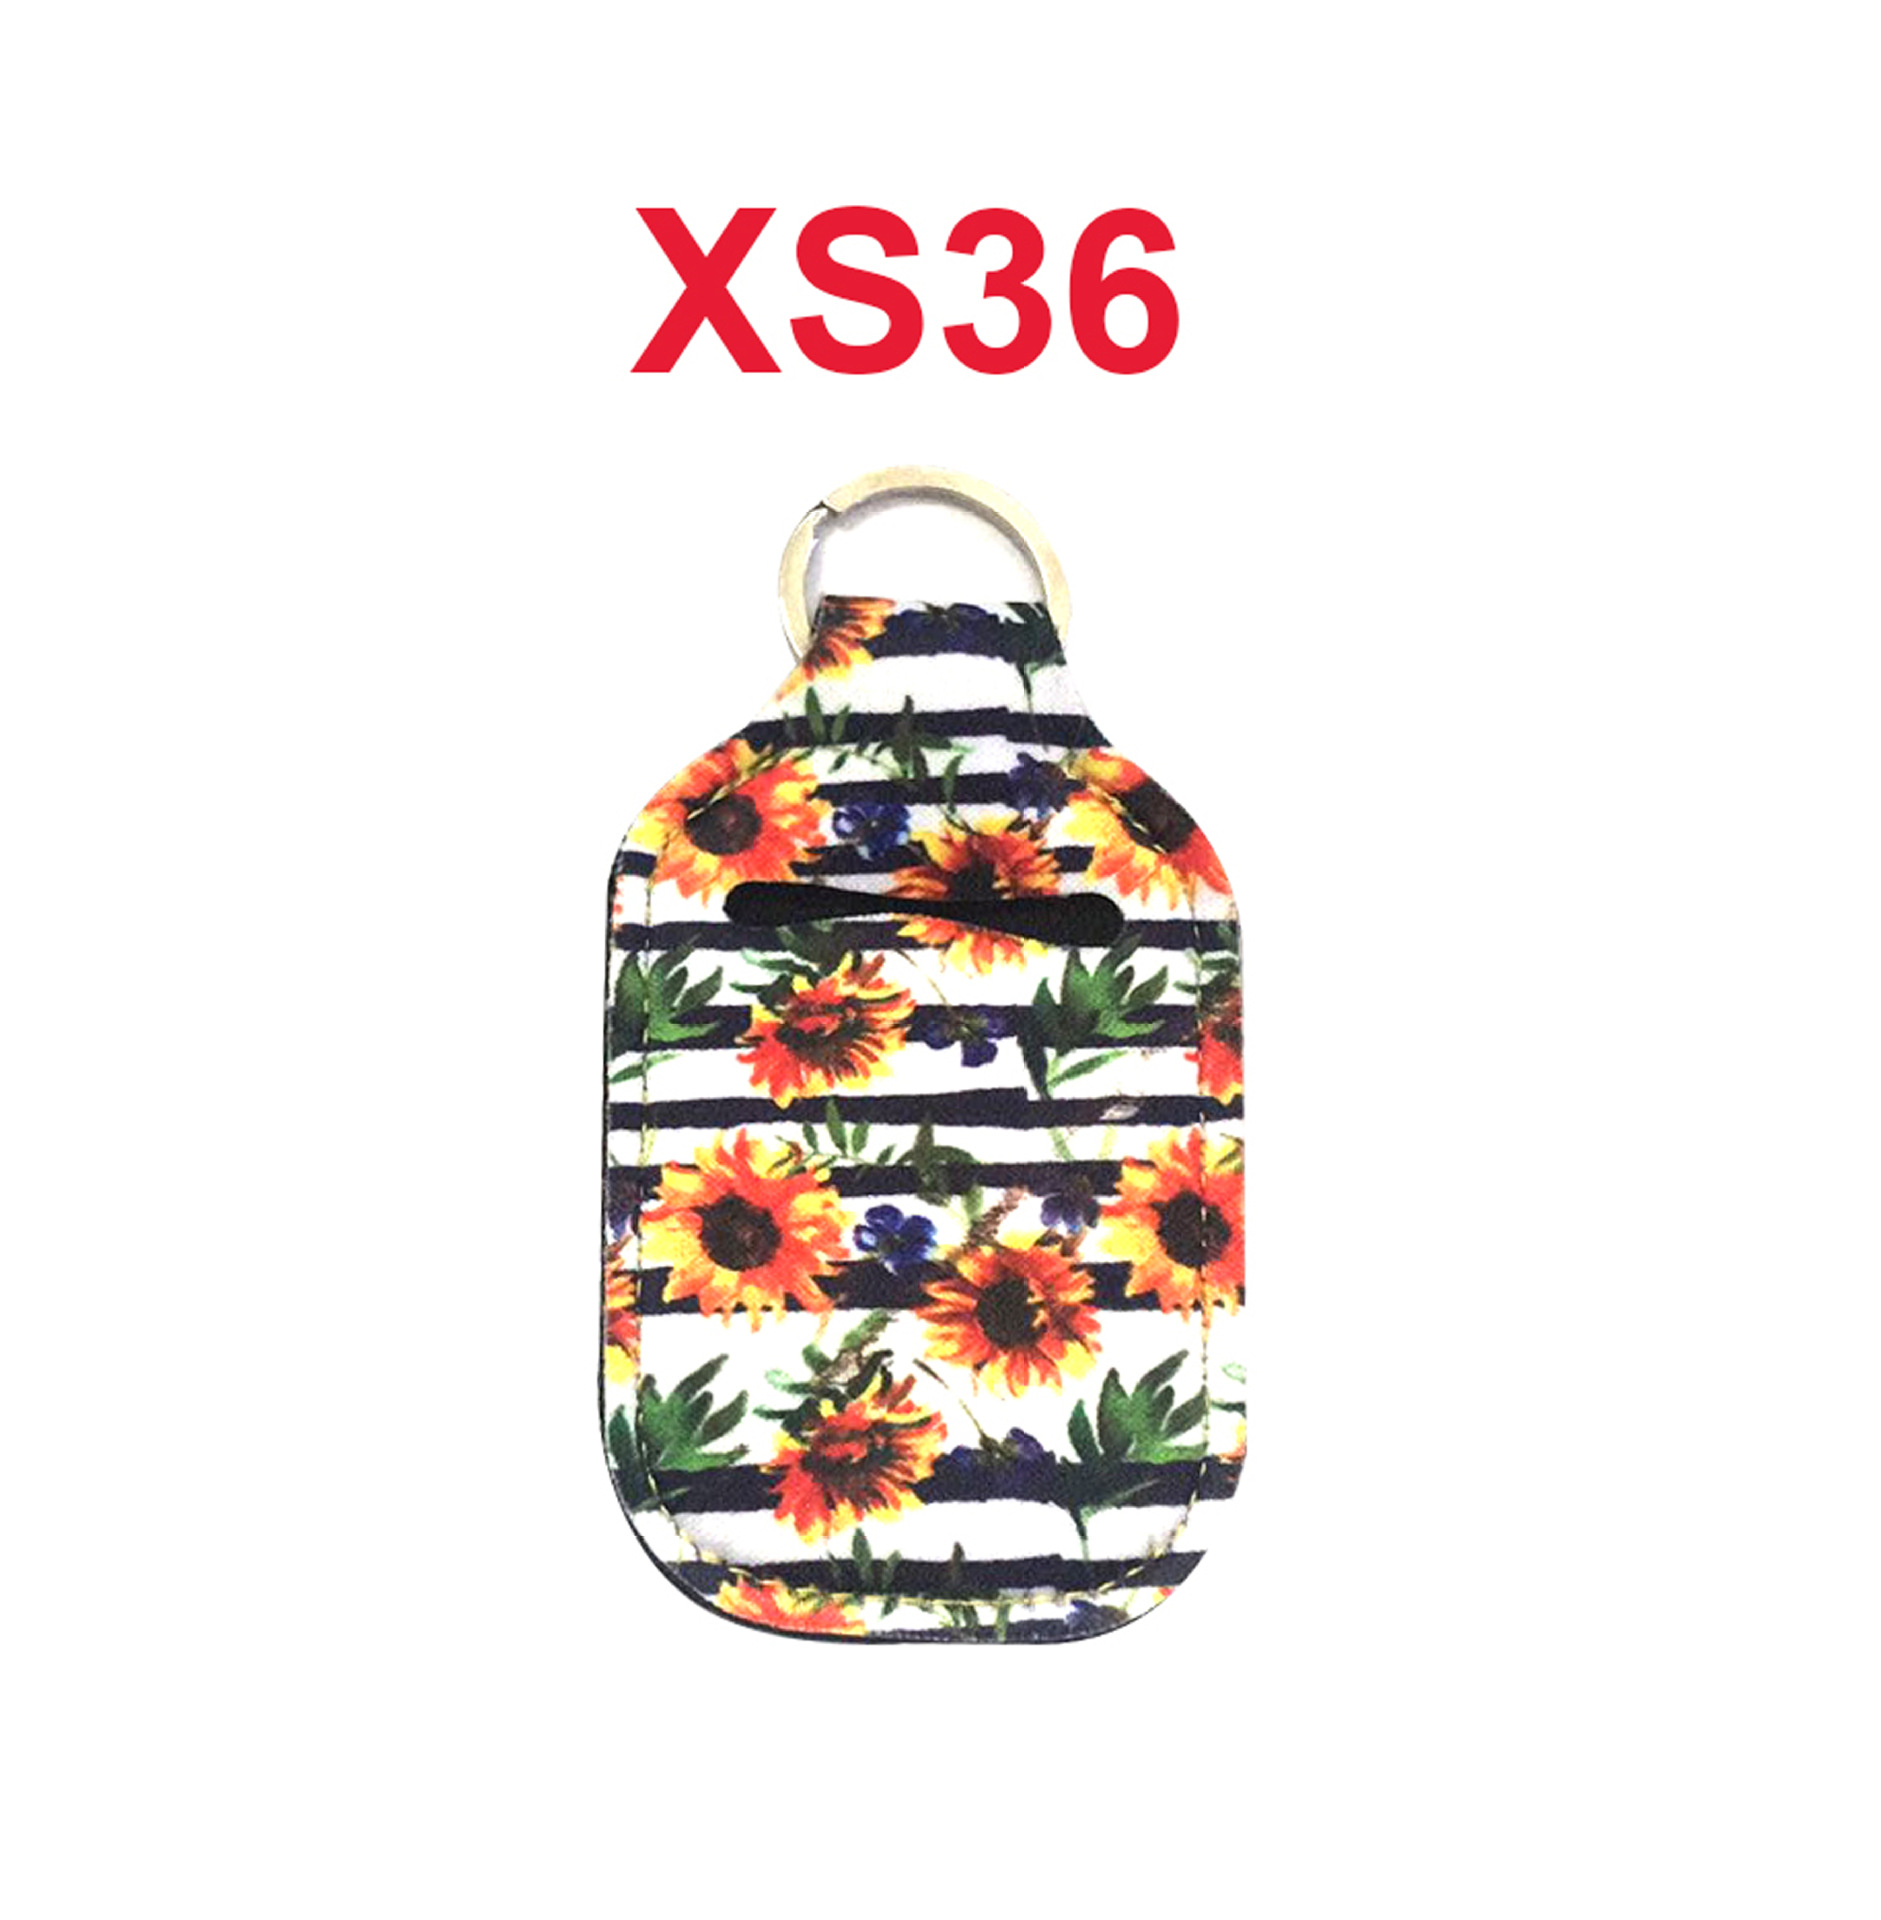 XS36